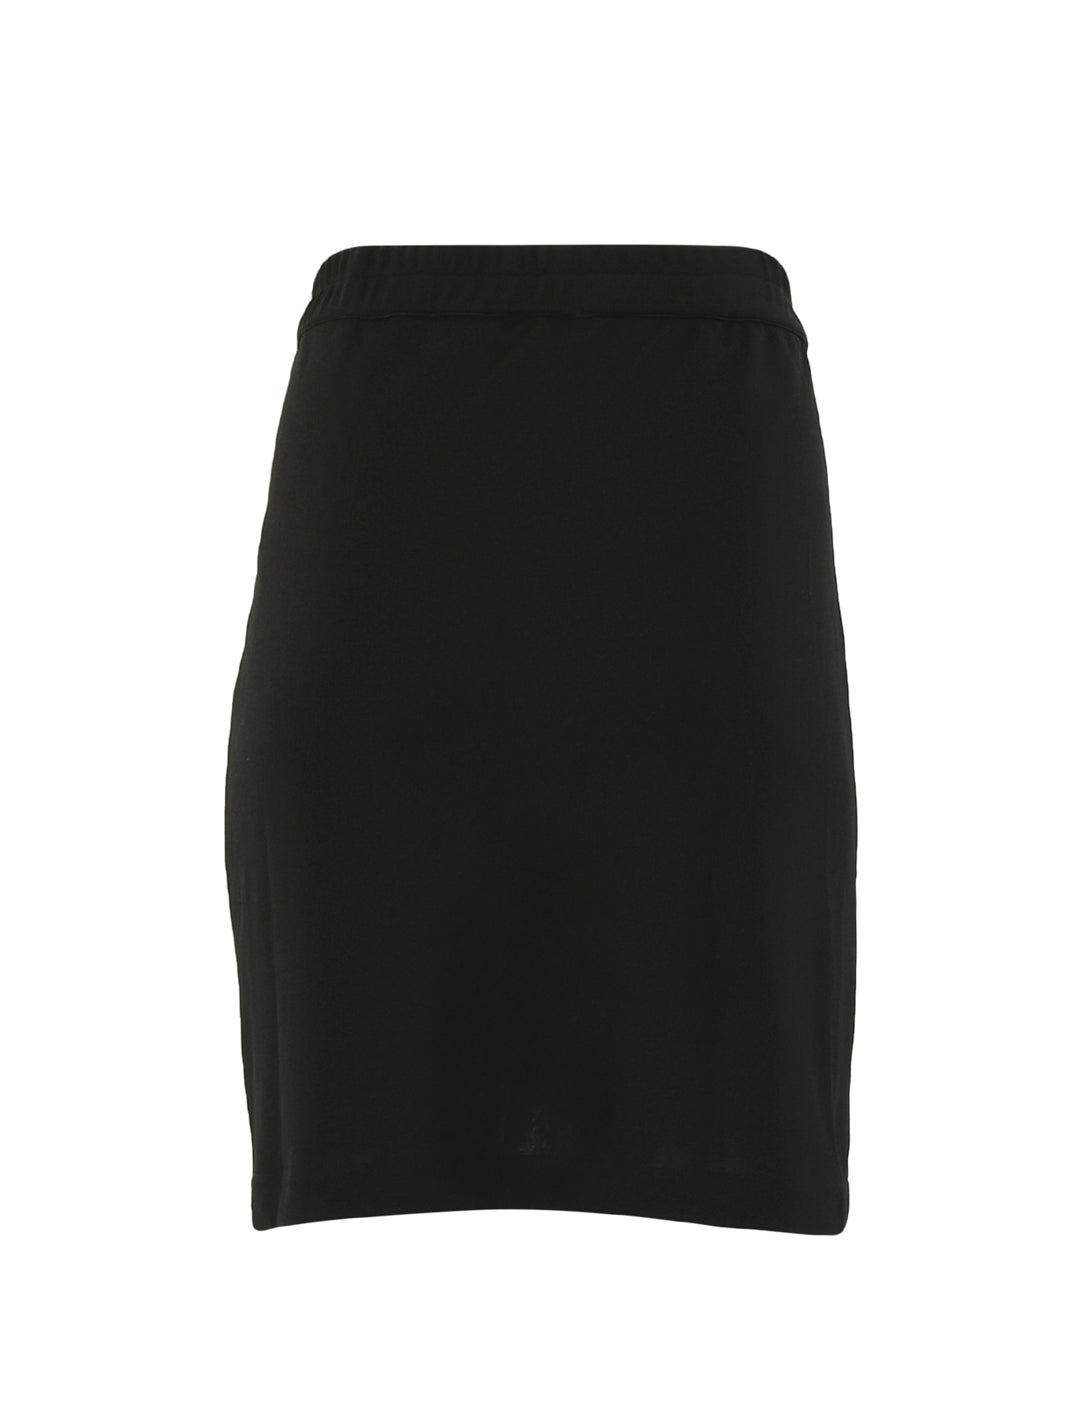 Continue Gabby skirt black - Online-Mode